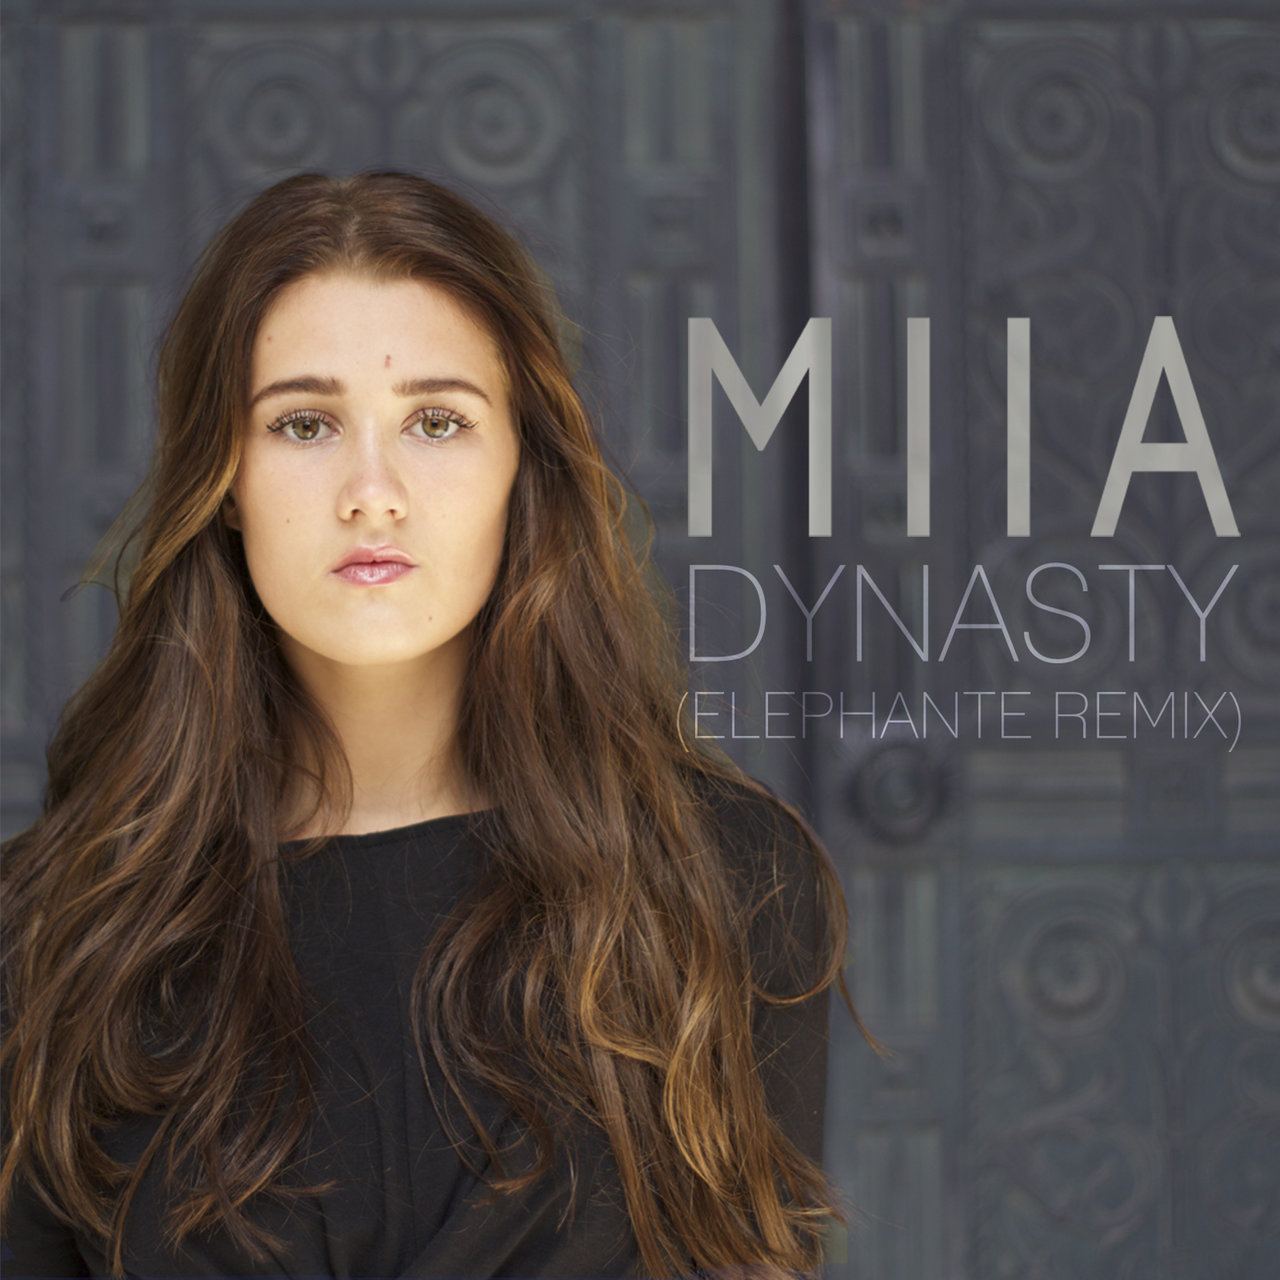 MIIA Dynasty (Elephante Remix) cover artwork